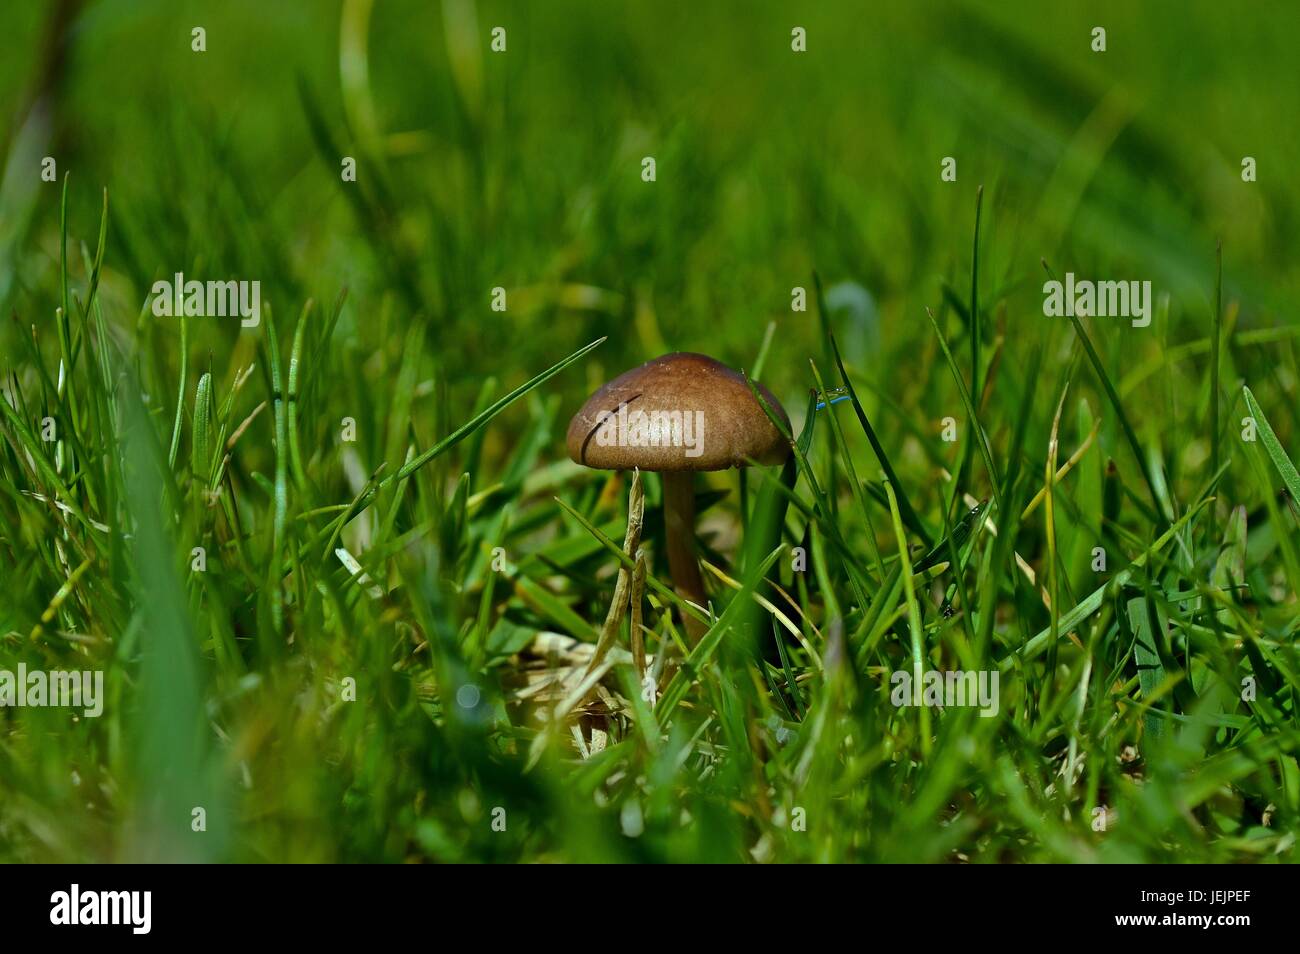 Tiny mushroom in the grass Stock Photo